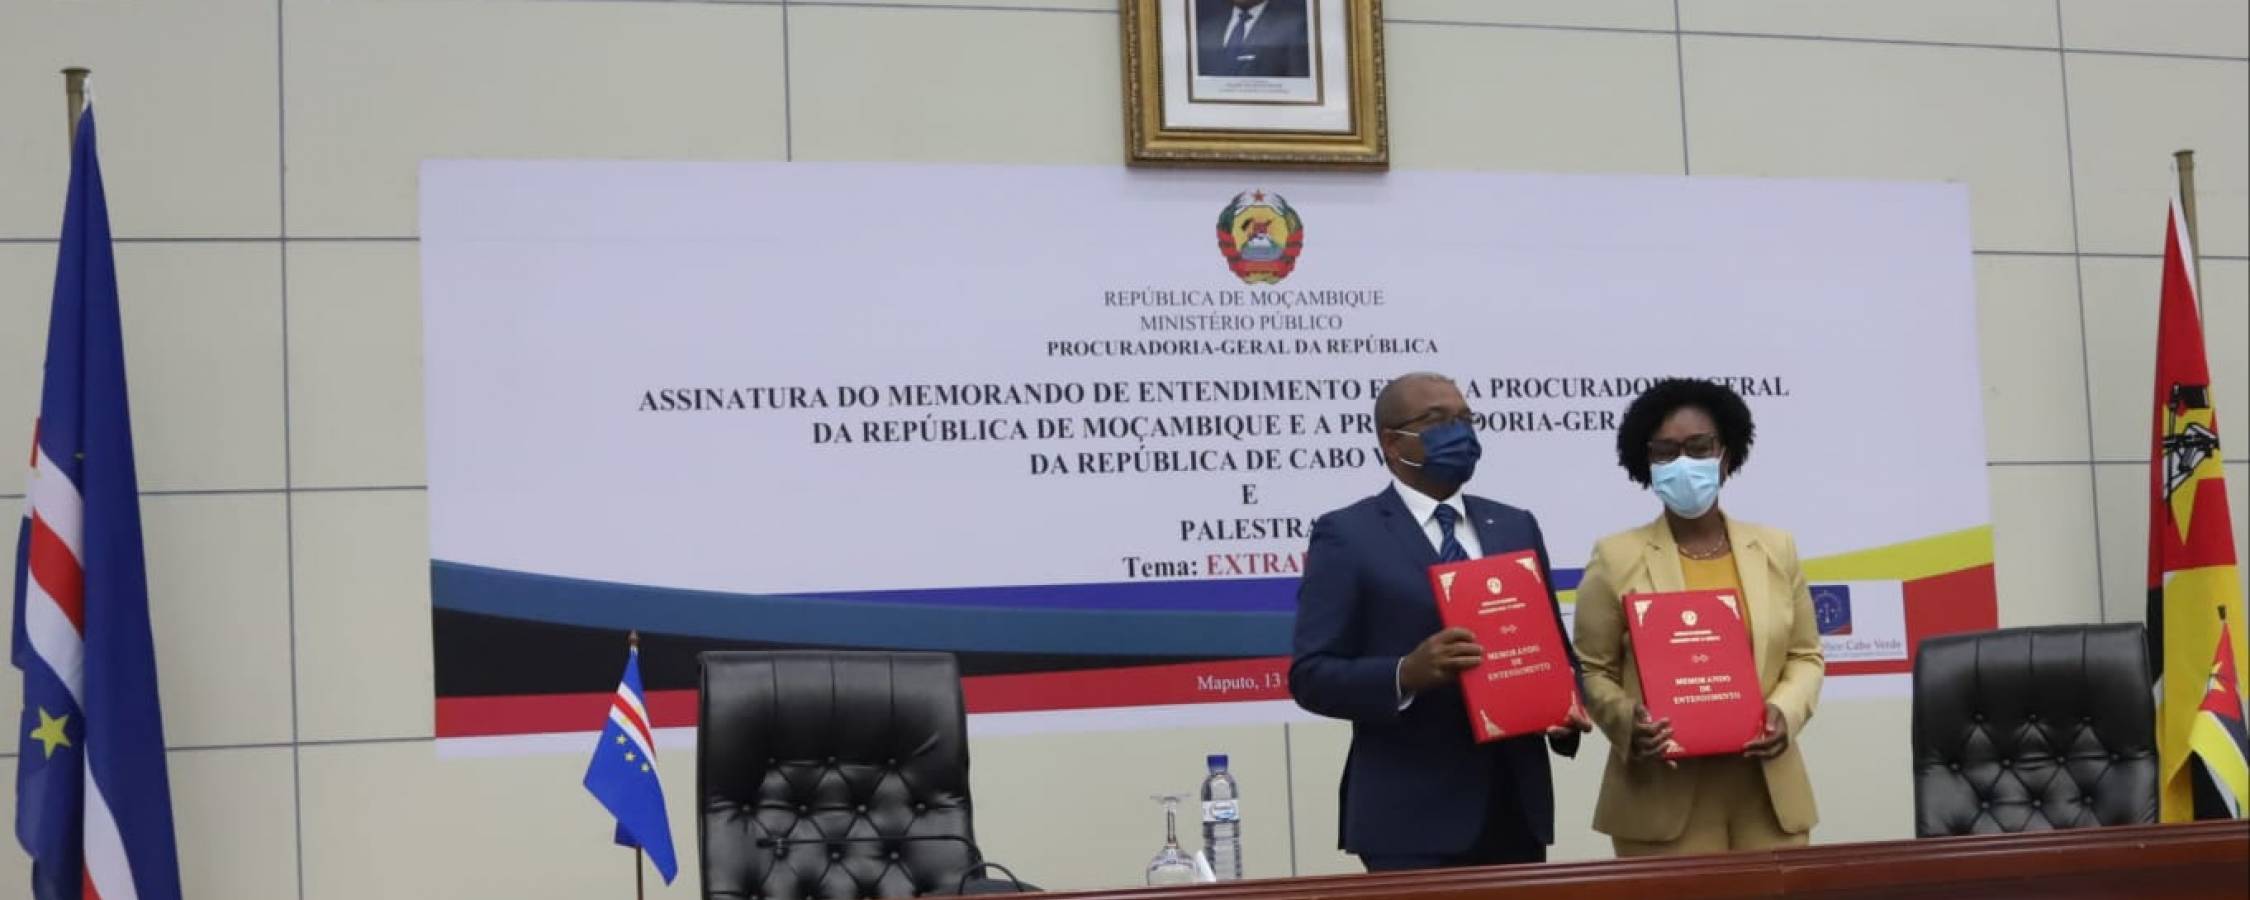 Procuradoria-Geral da República de Cabo Verde assina Memorando de Entendimento com a sua congénere Moçambicana